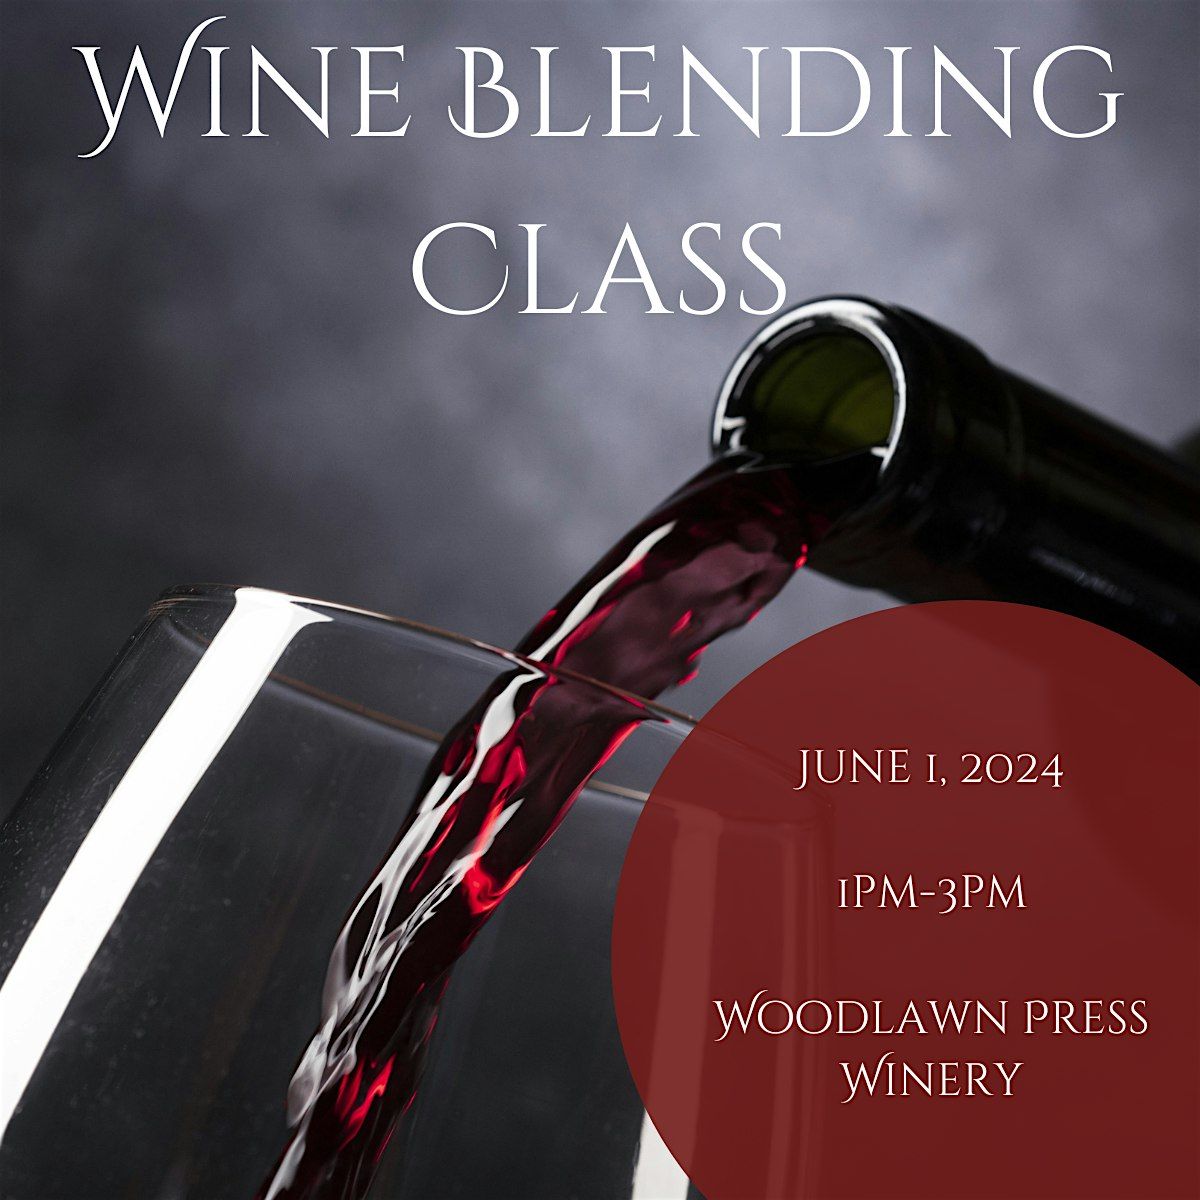 Wine Blending Class